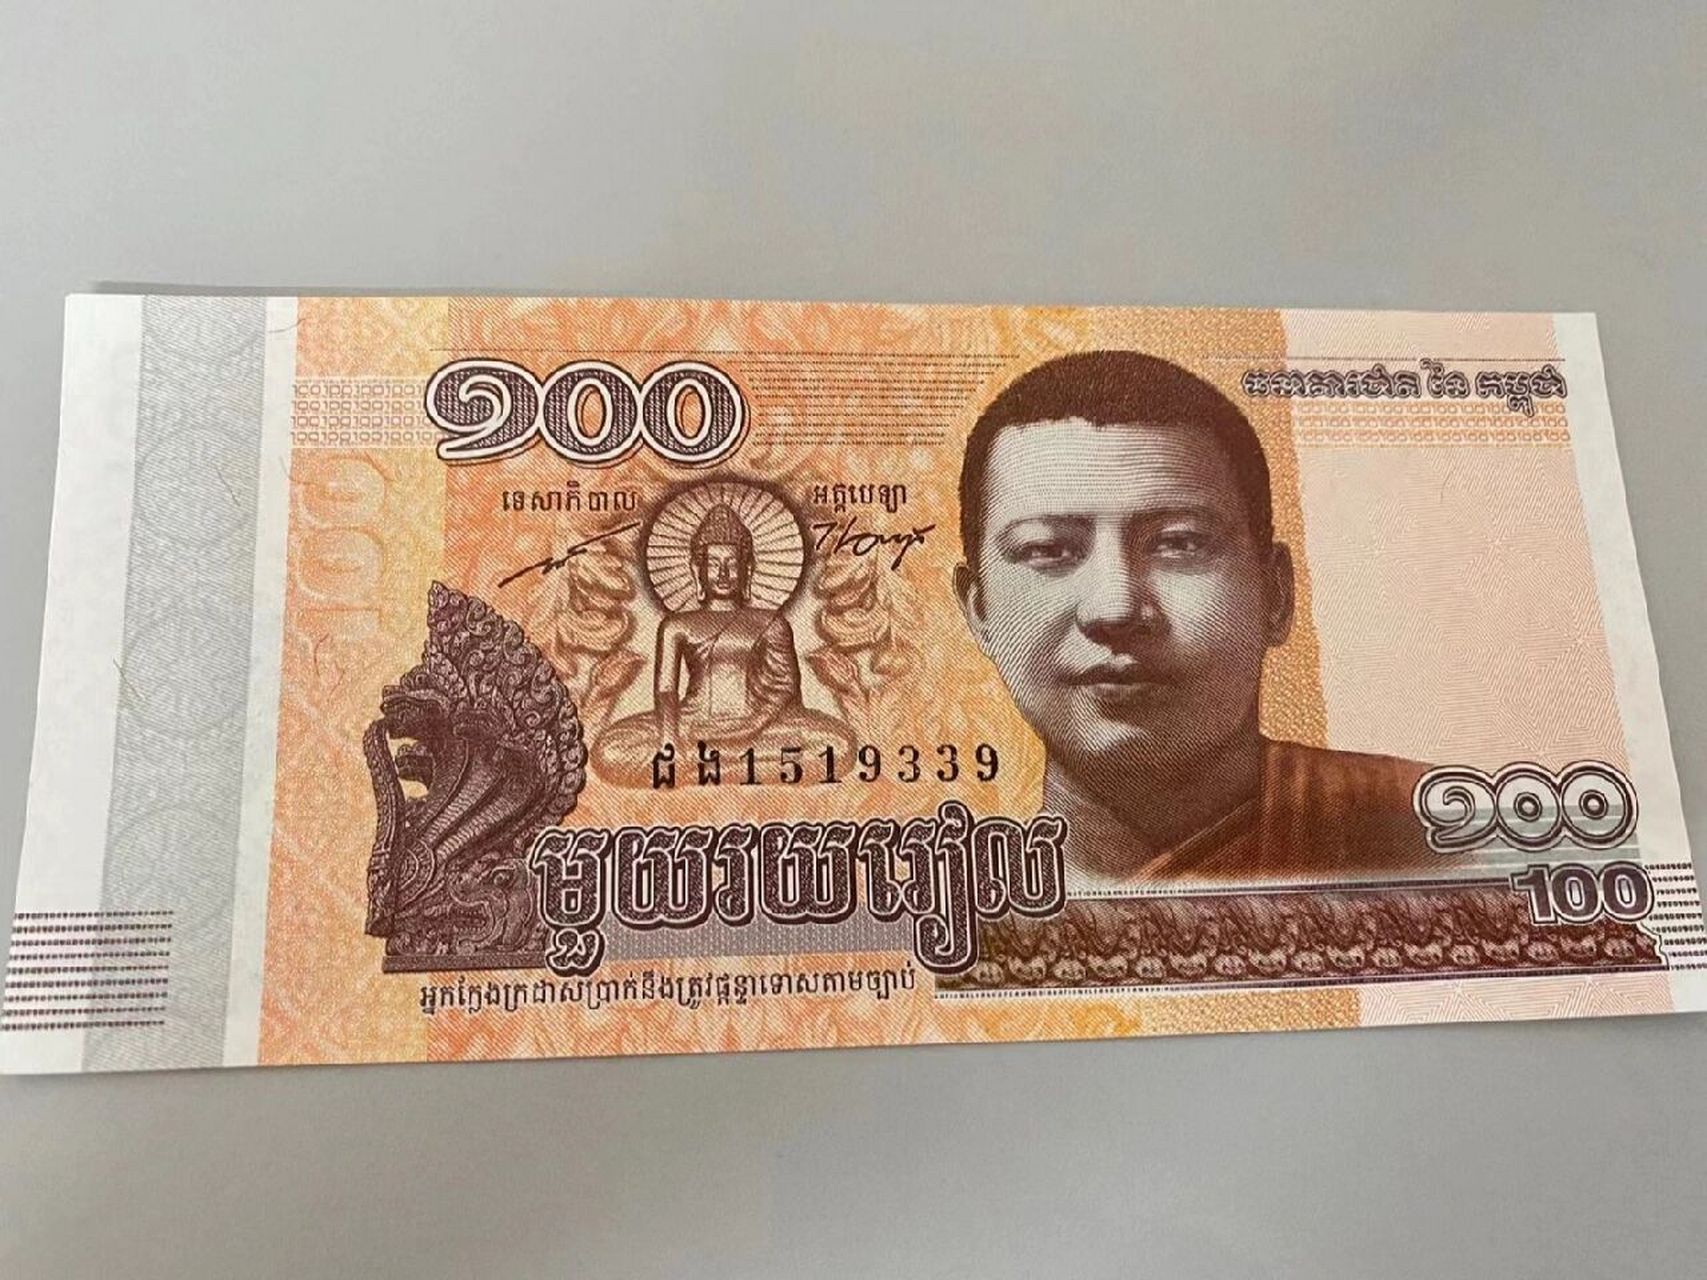 柬埔寨钱币瑞尔【100折合人民币约016块钱